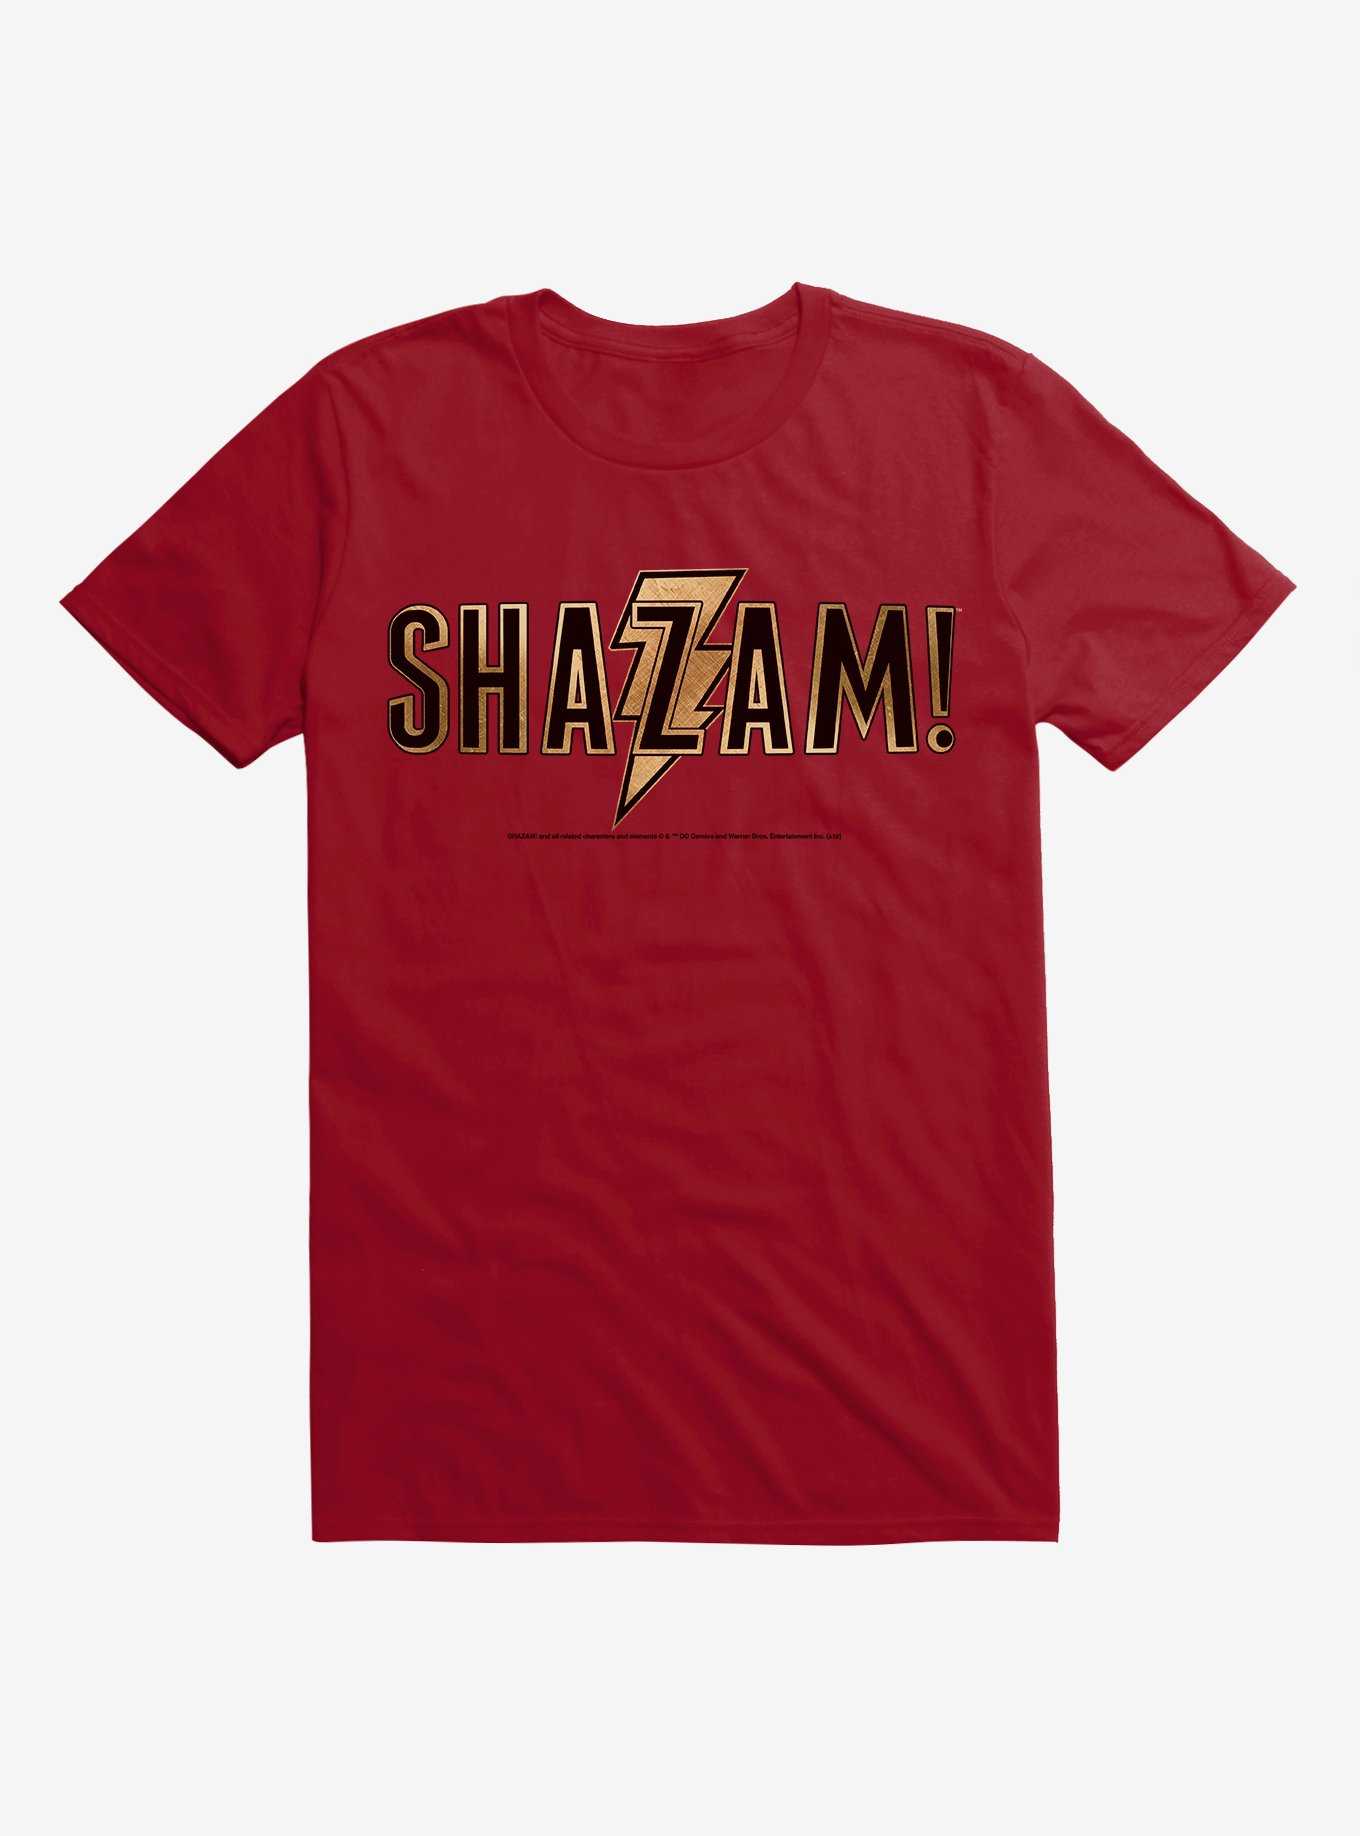 DC Comics Shazam! Clothing in Shazam! 